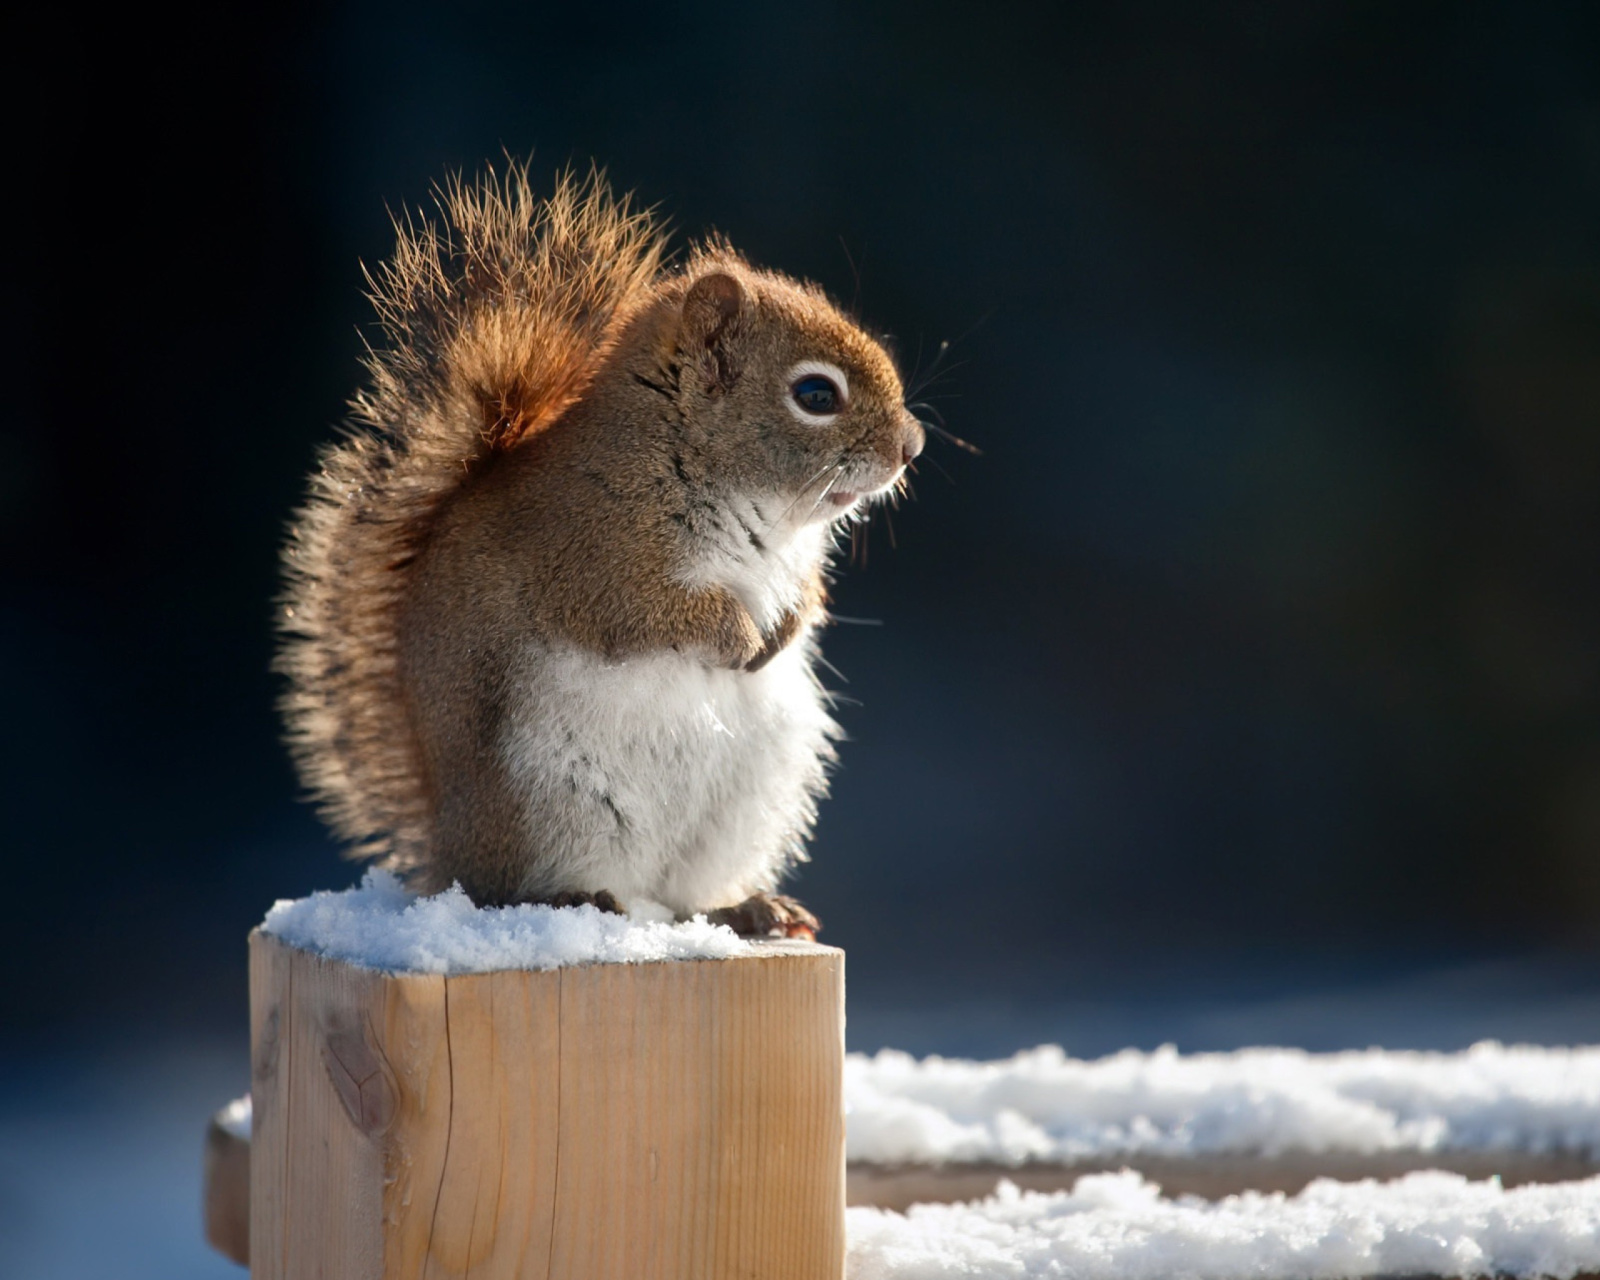 Cute squirrel in winter screenshot #1 1600x1280